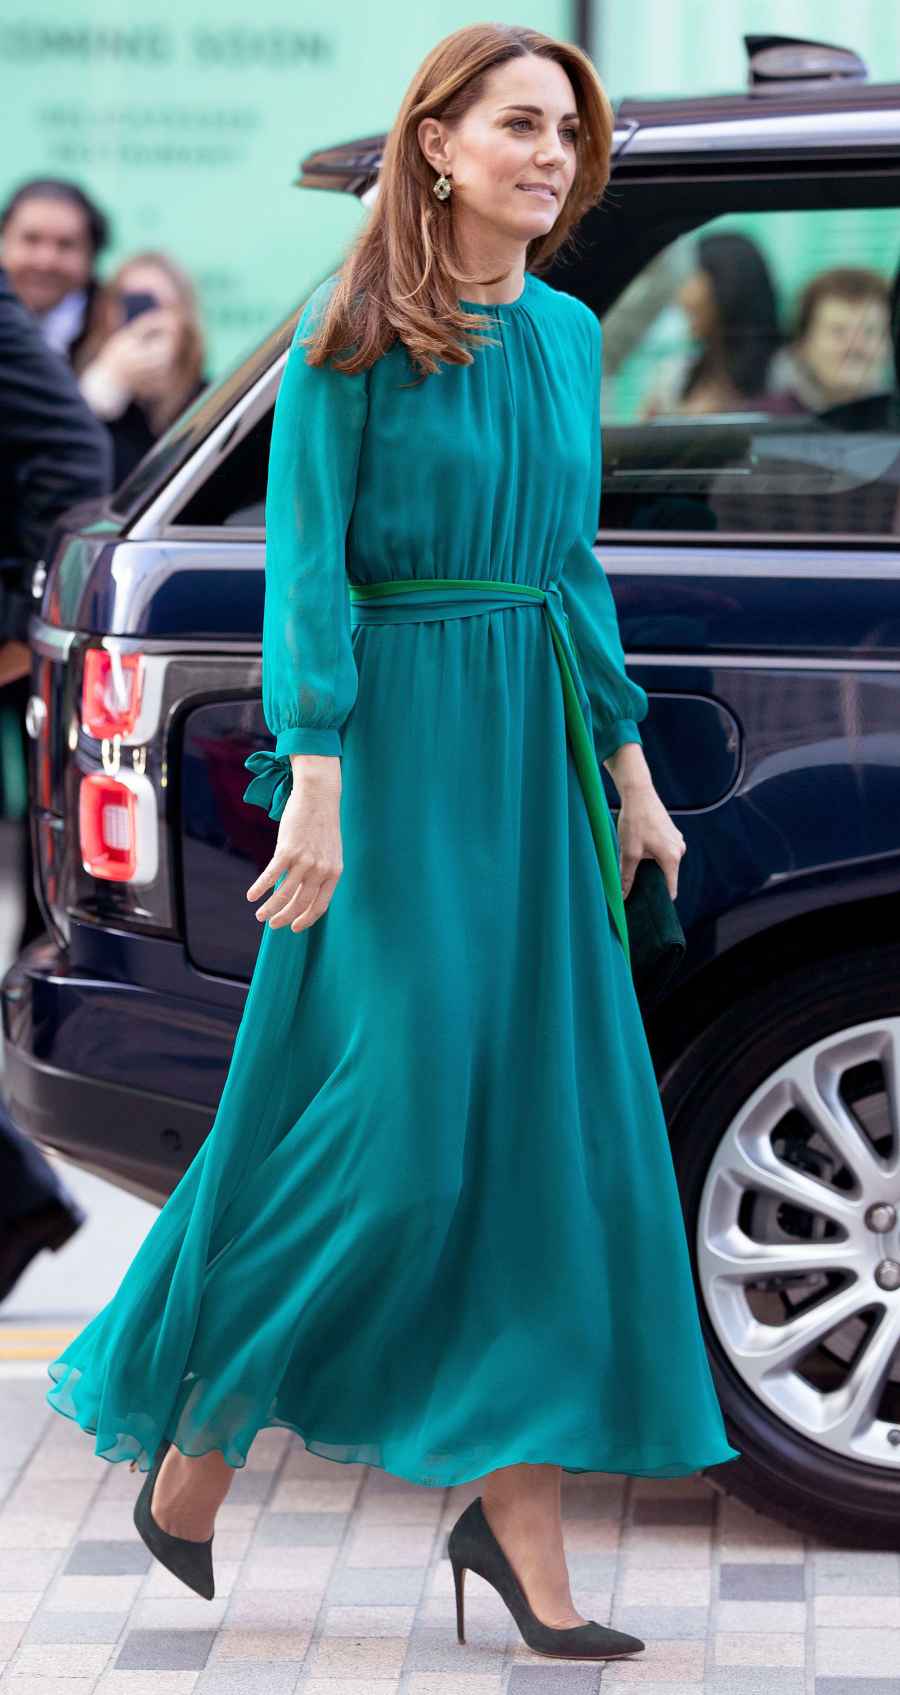 Kate Middleton Teal Dress October 2, 2019